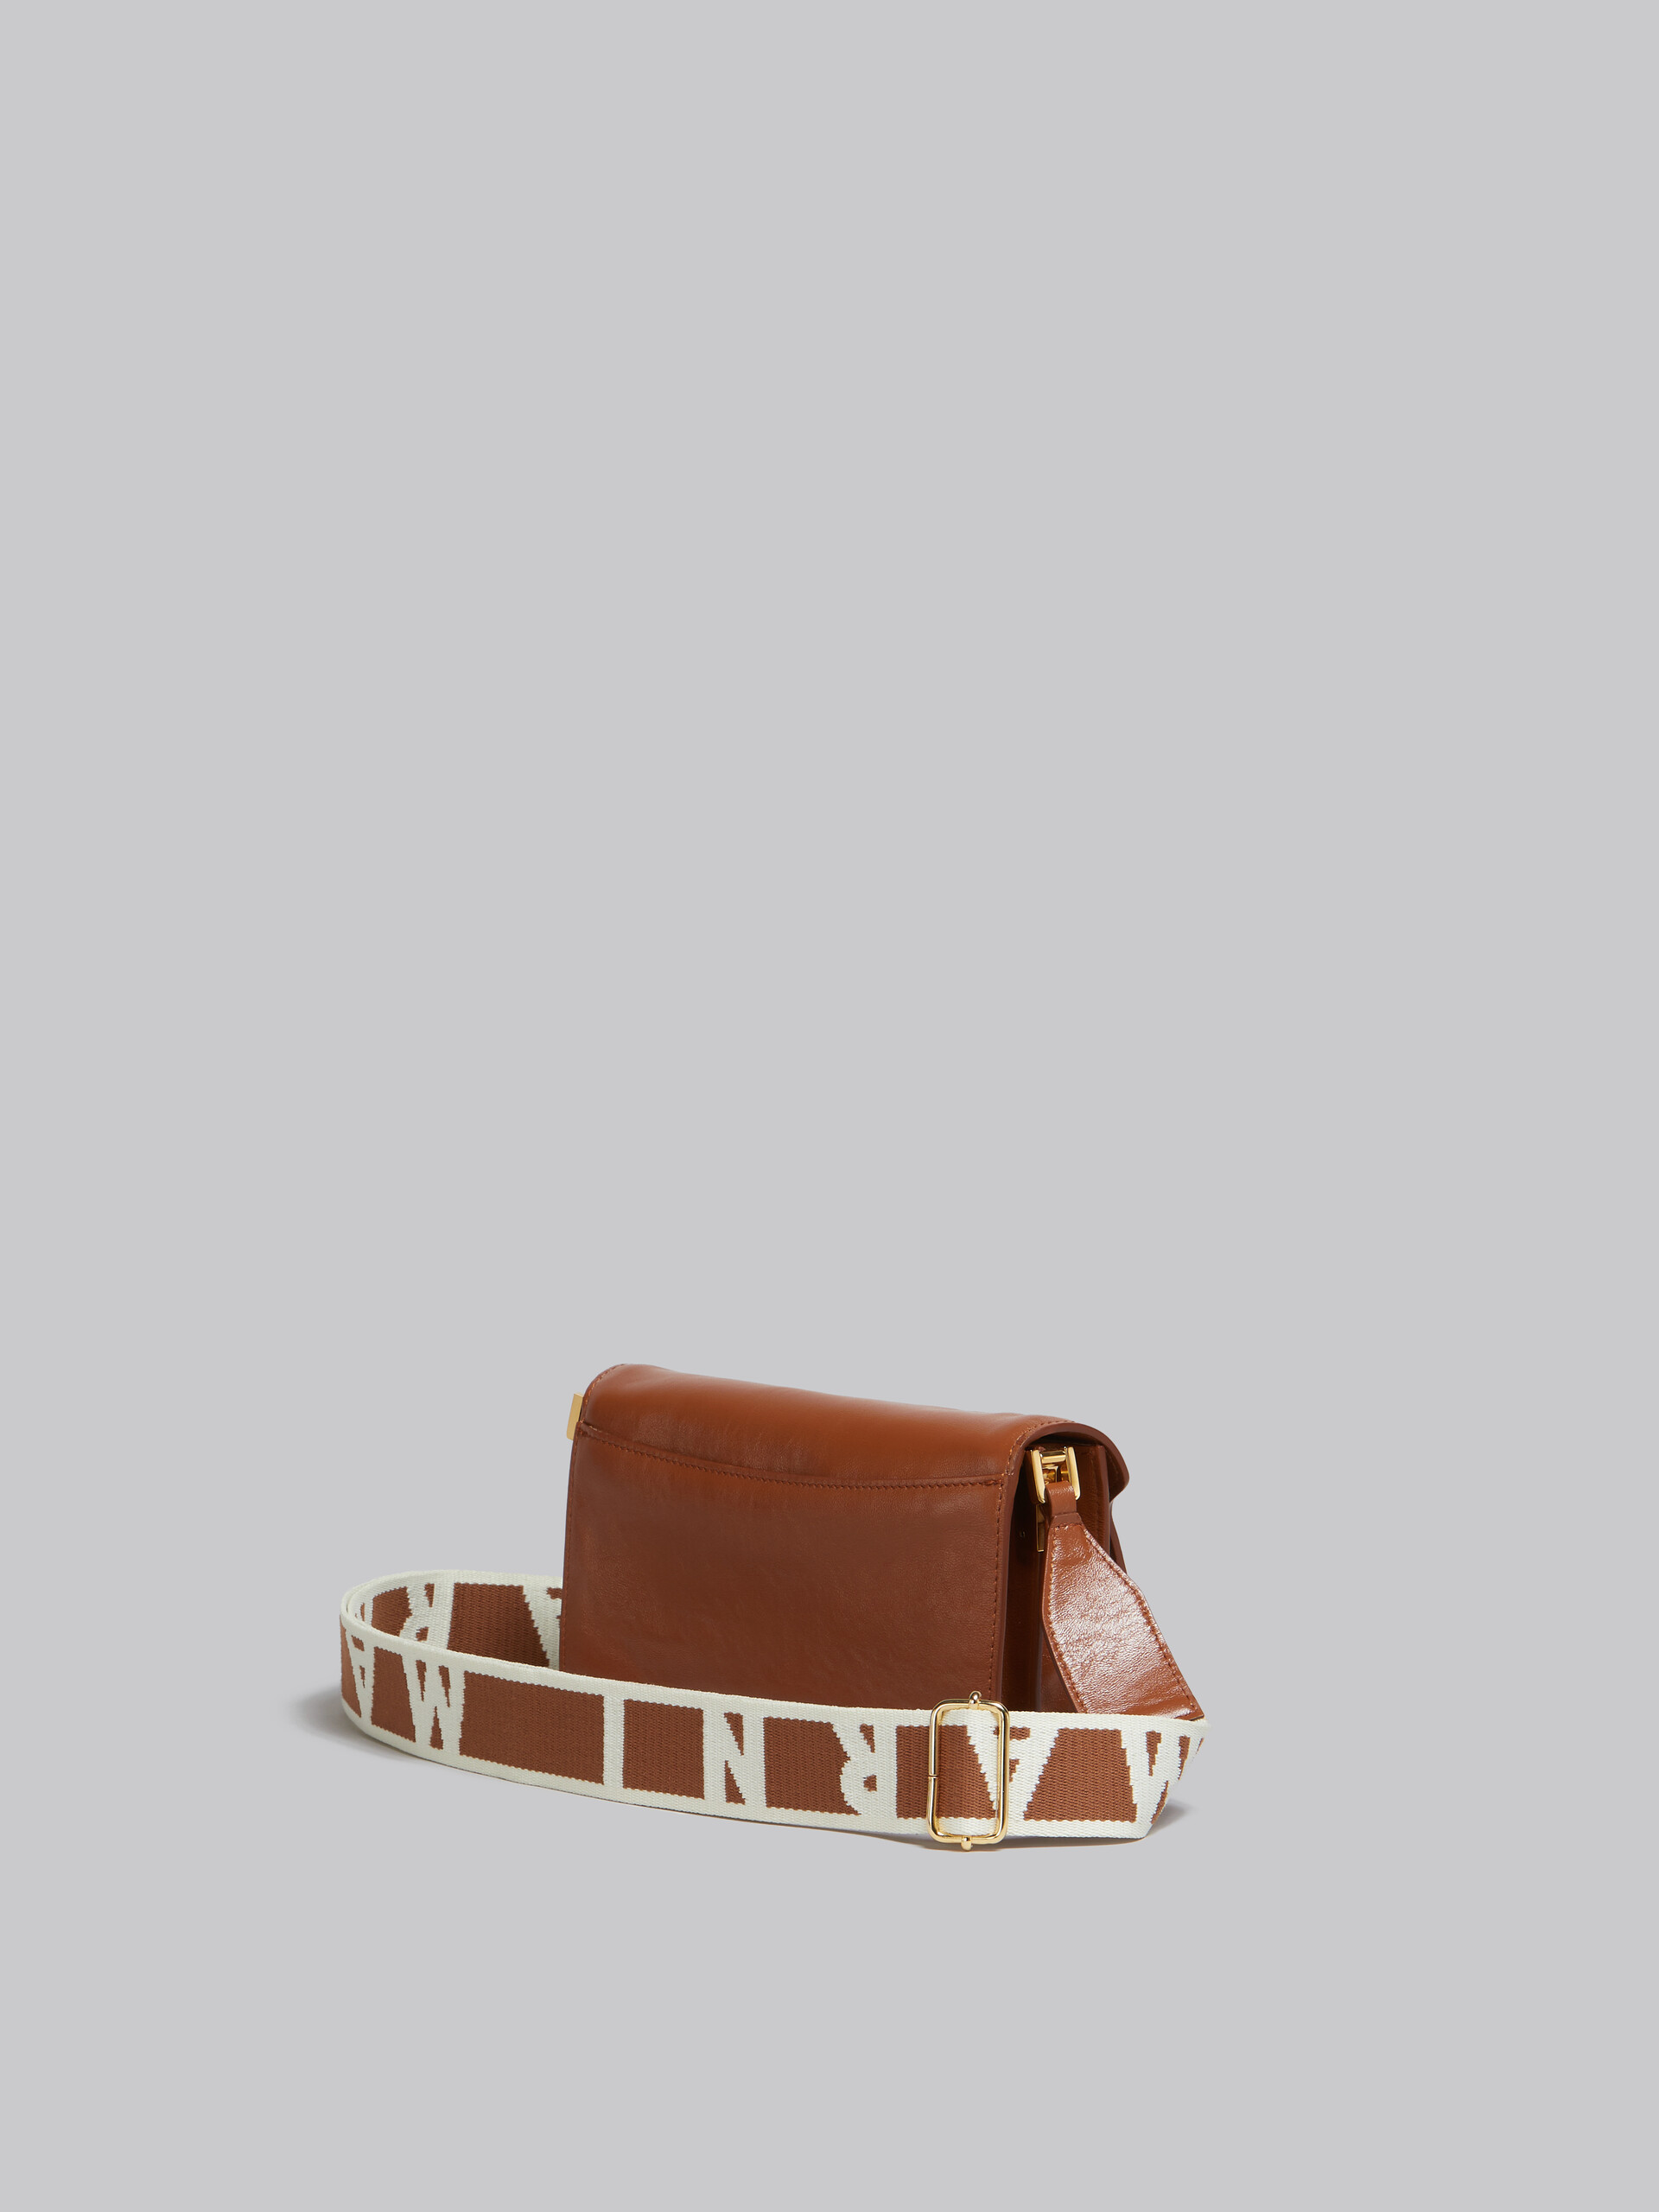 Trunk Soft Bag E/W in pelle marrone con tracolla logata - Borse a spalla - Image 3